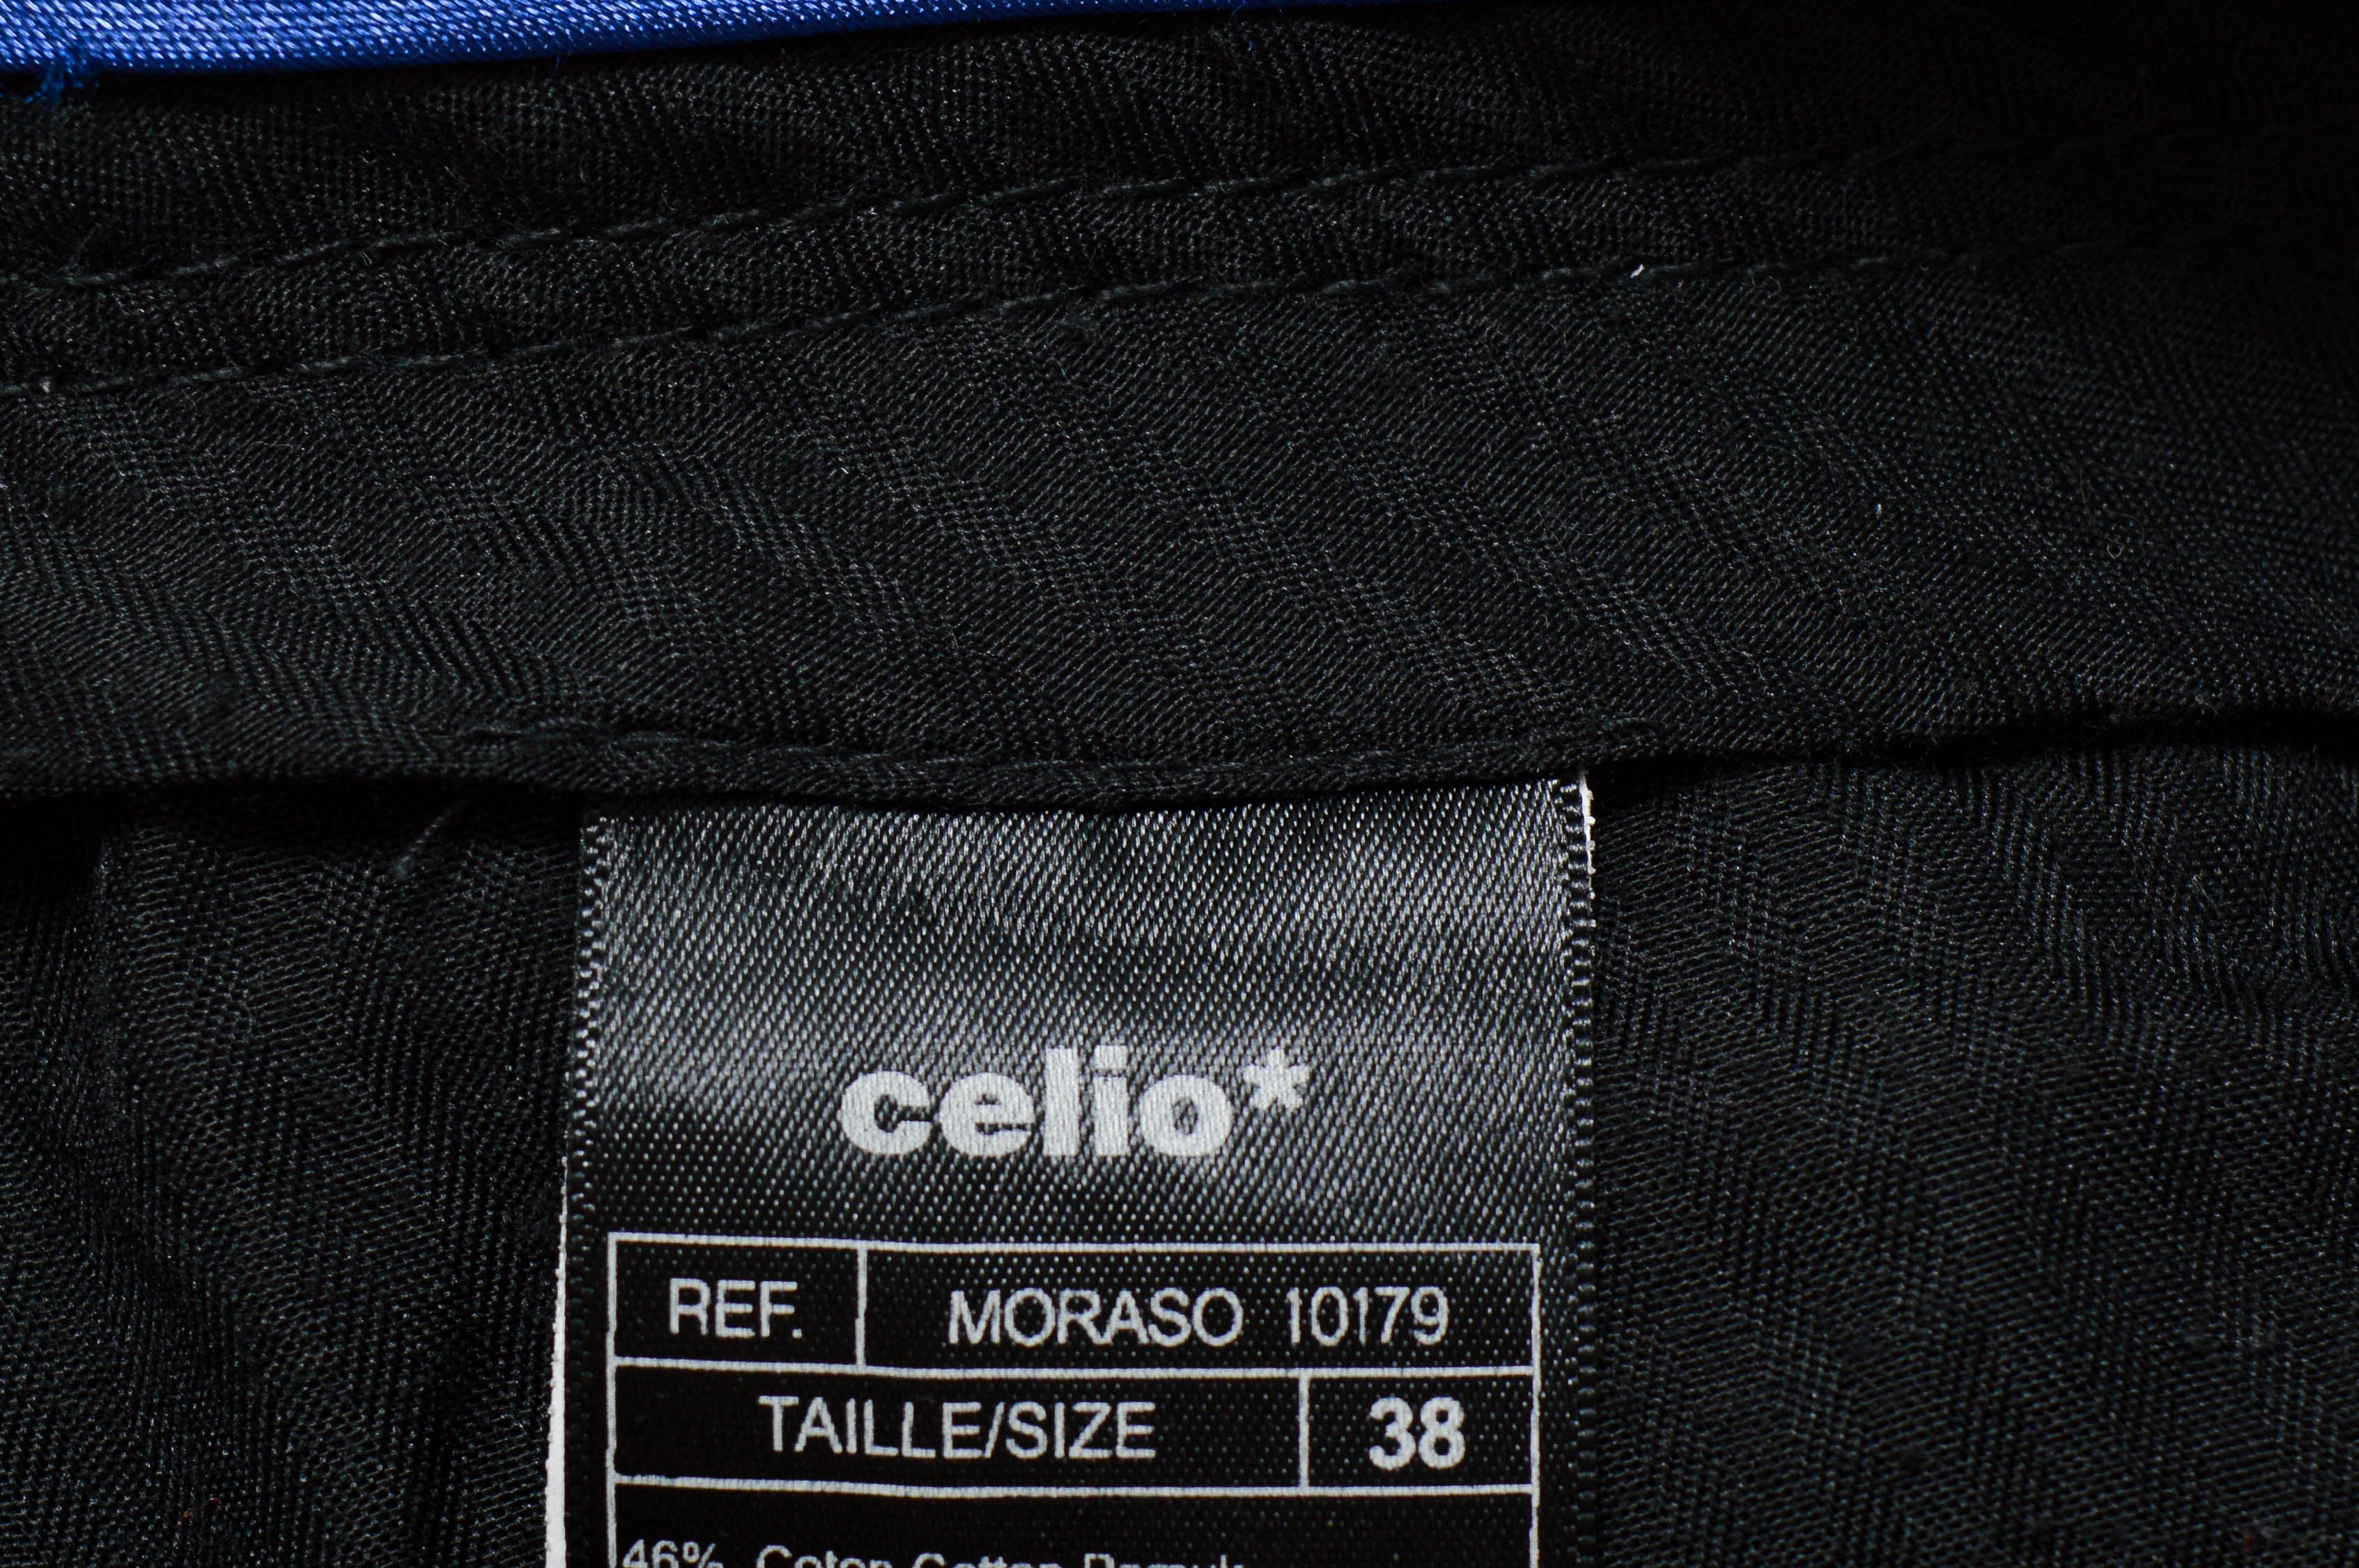 Women's trousers - Celio* - 2